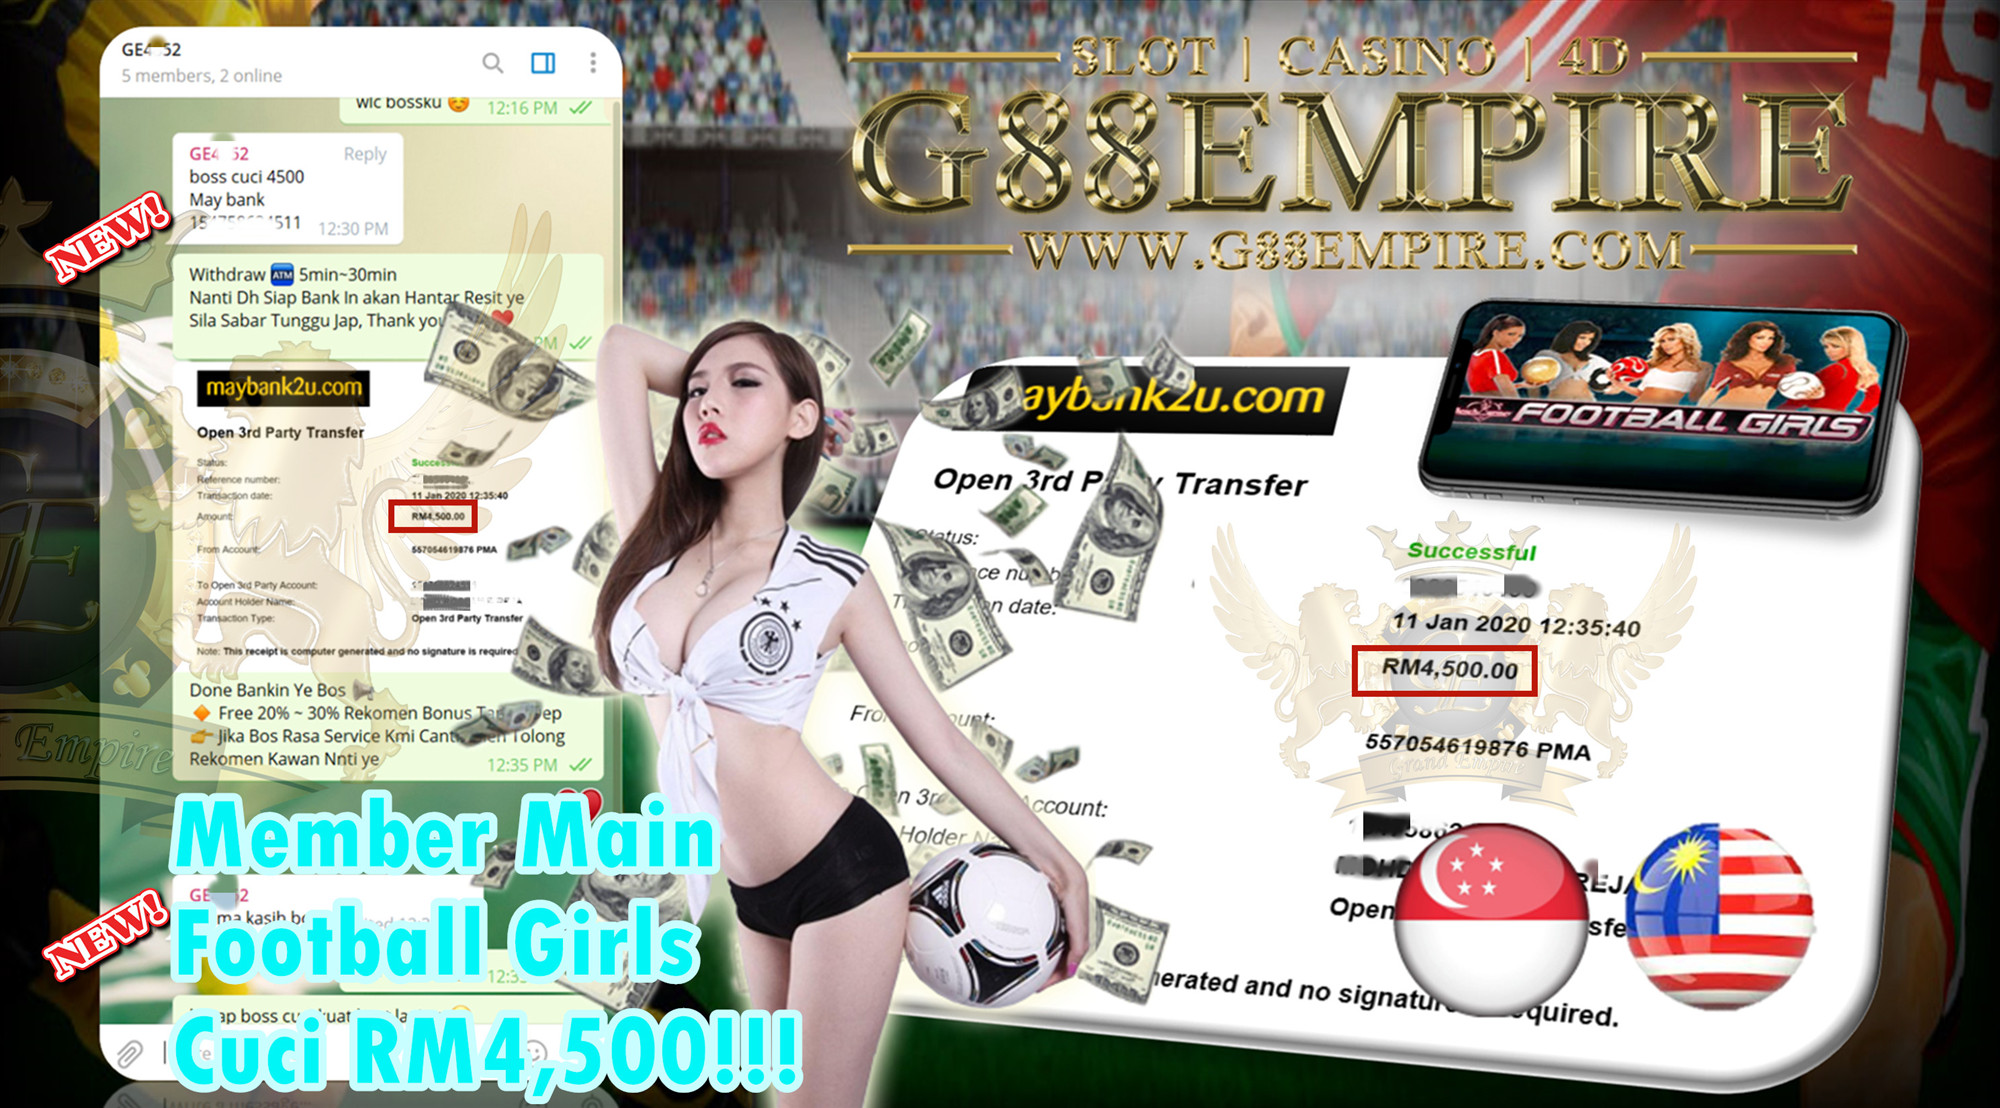 MEMBER MAIN FOOTBALL GIRLS CUCI RM4,500!!!